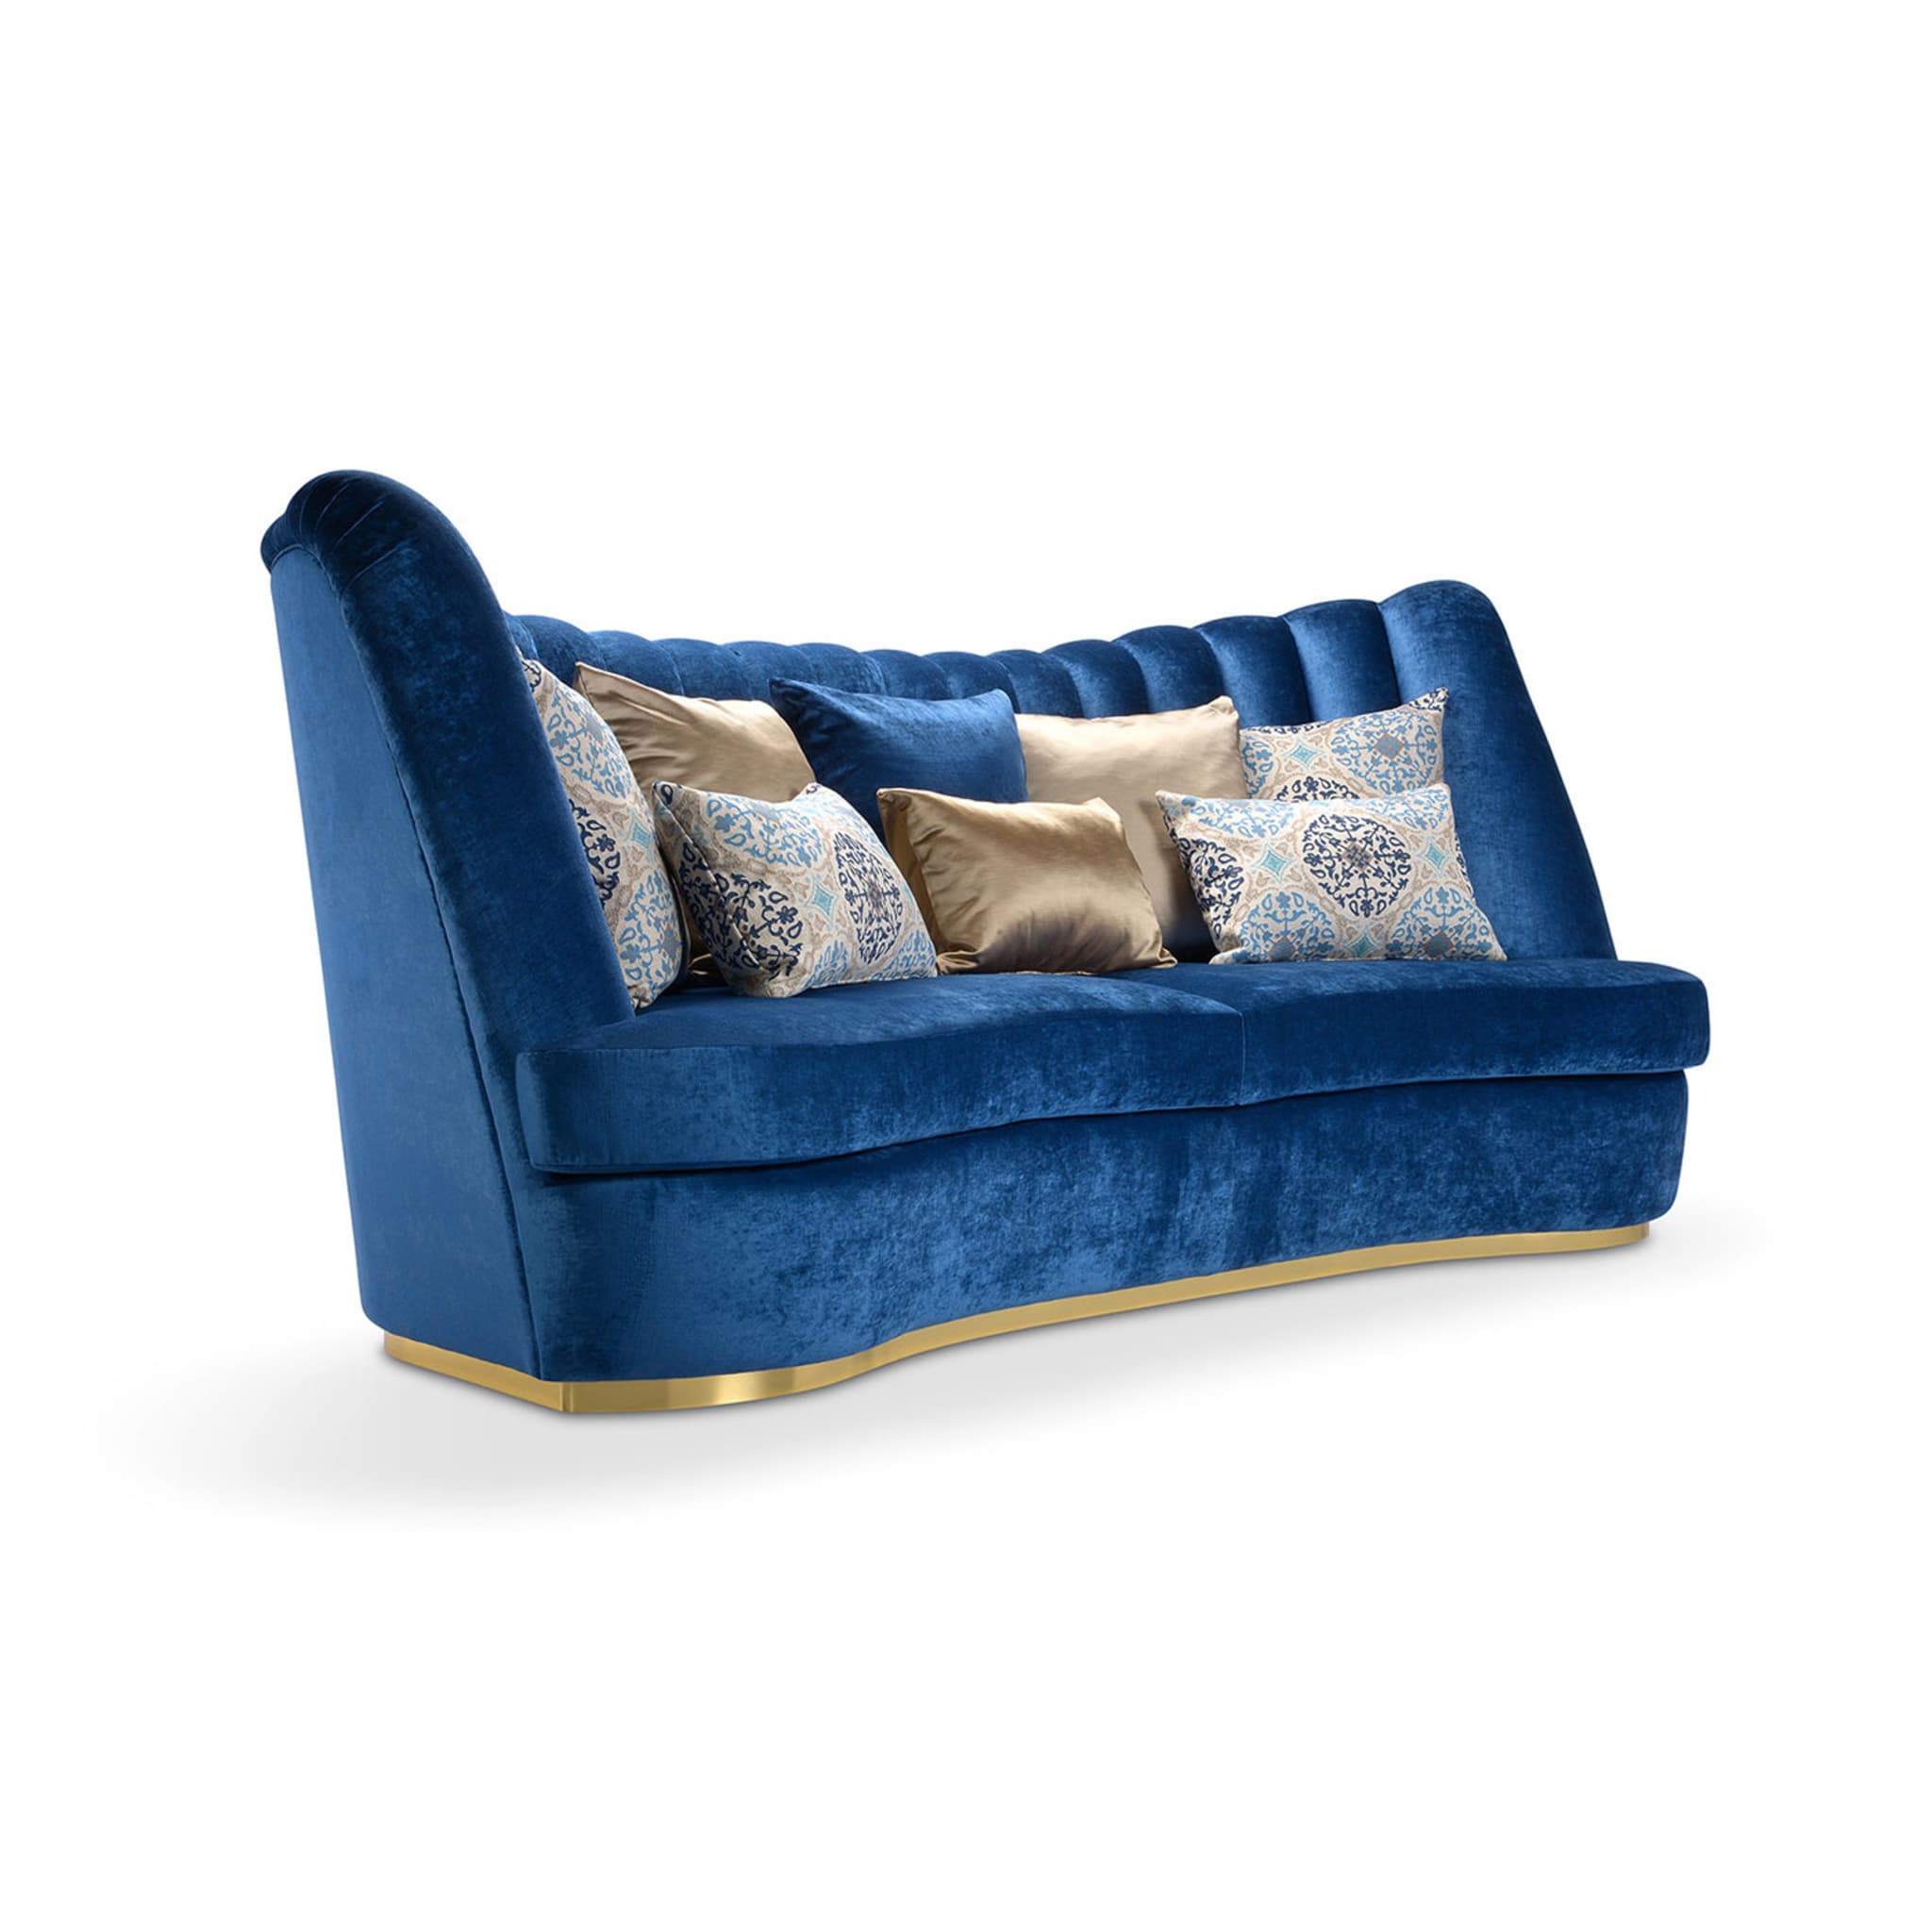 Thalia Blue 4-Seater Sofa - Alternative view 1